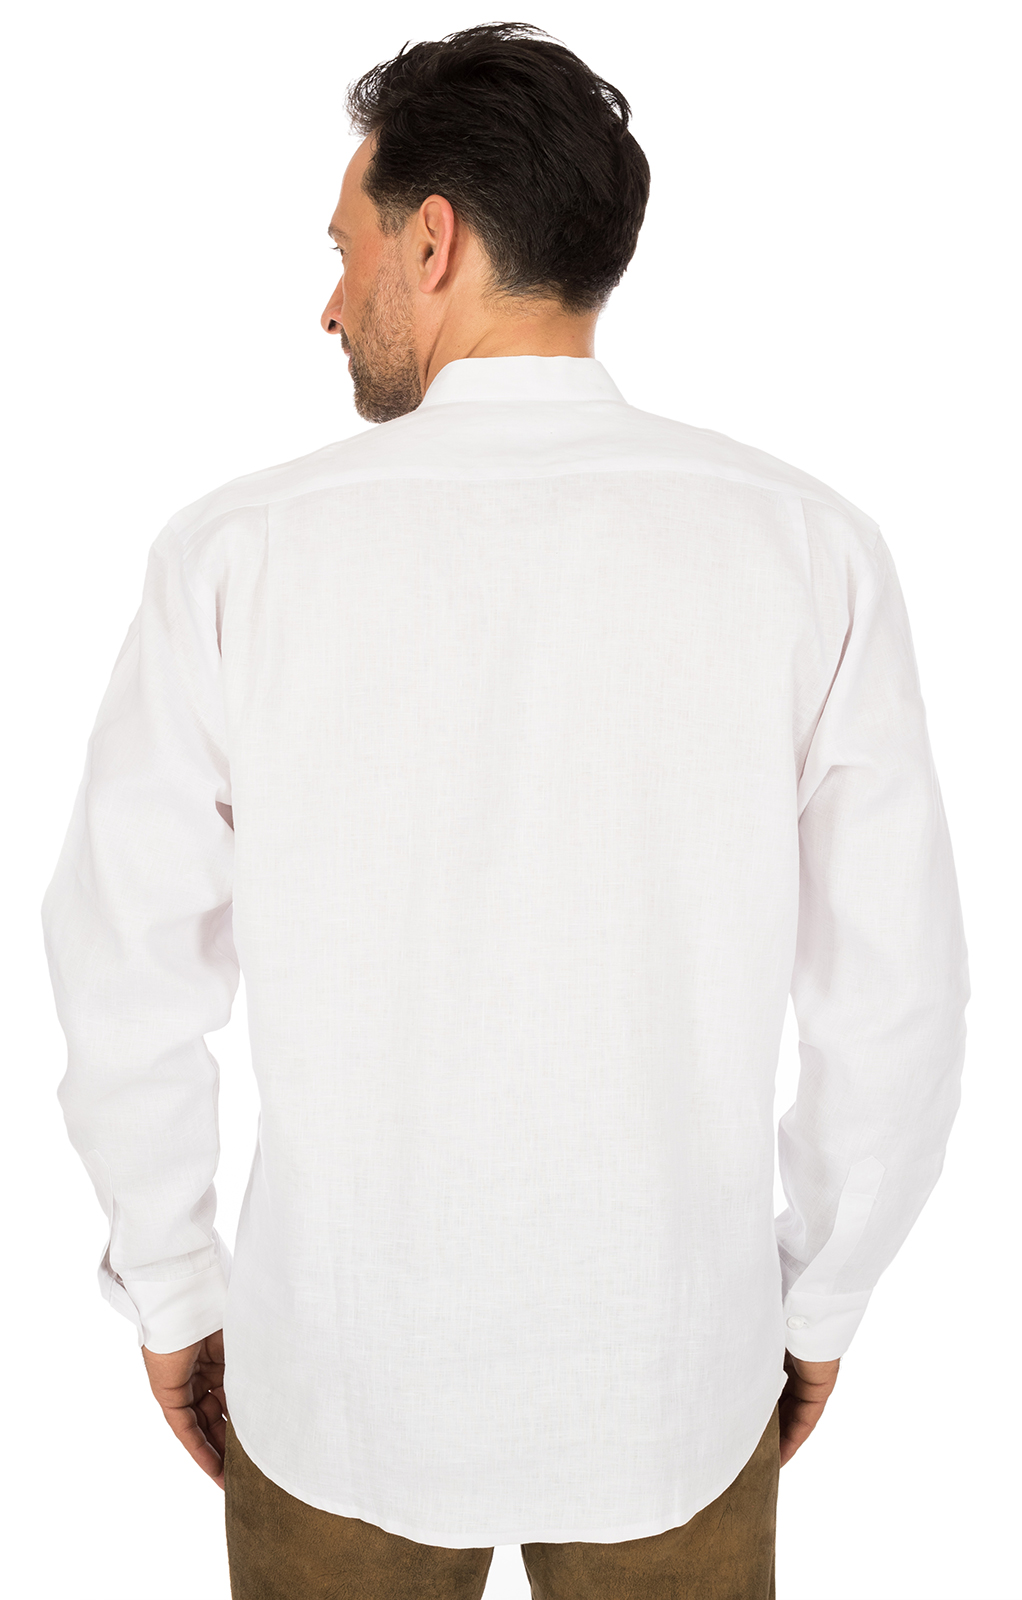 weitere Bilder von German traditional shirt Pfoad white